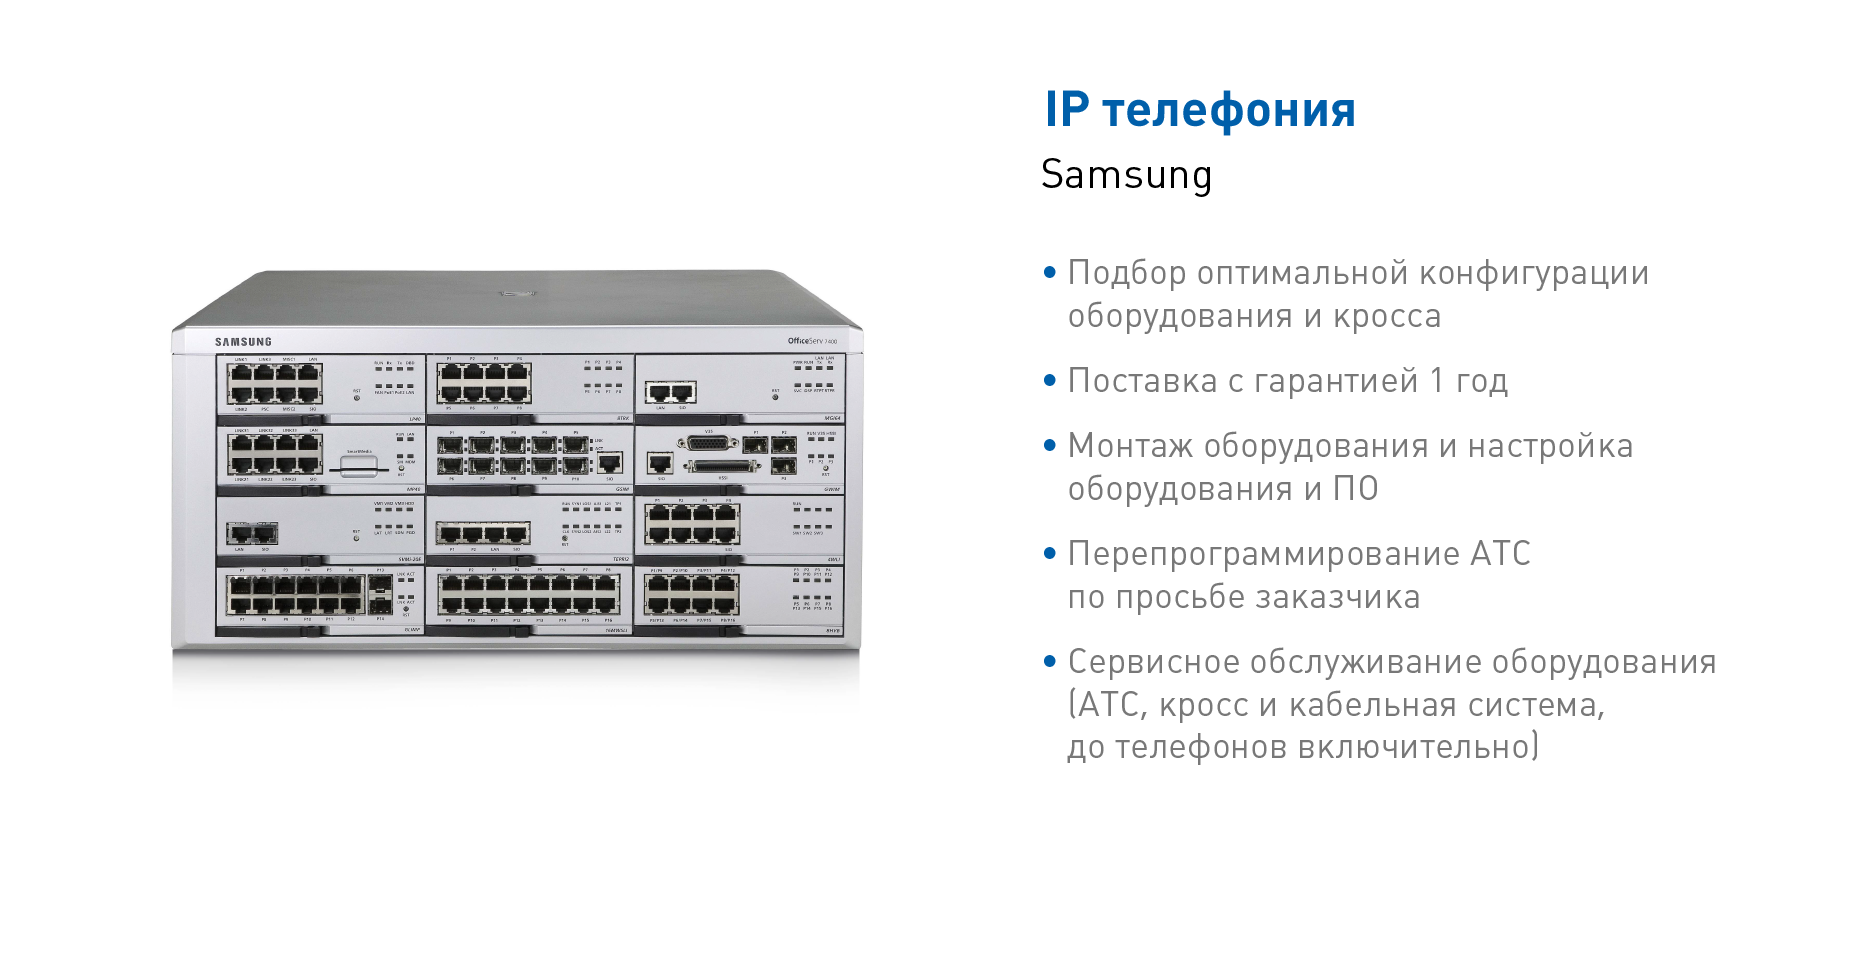 АТС и IP телефония Samsung